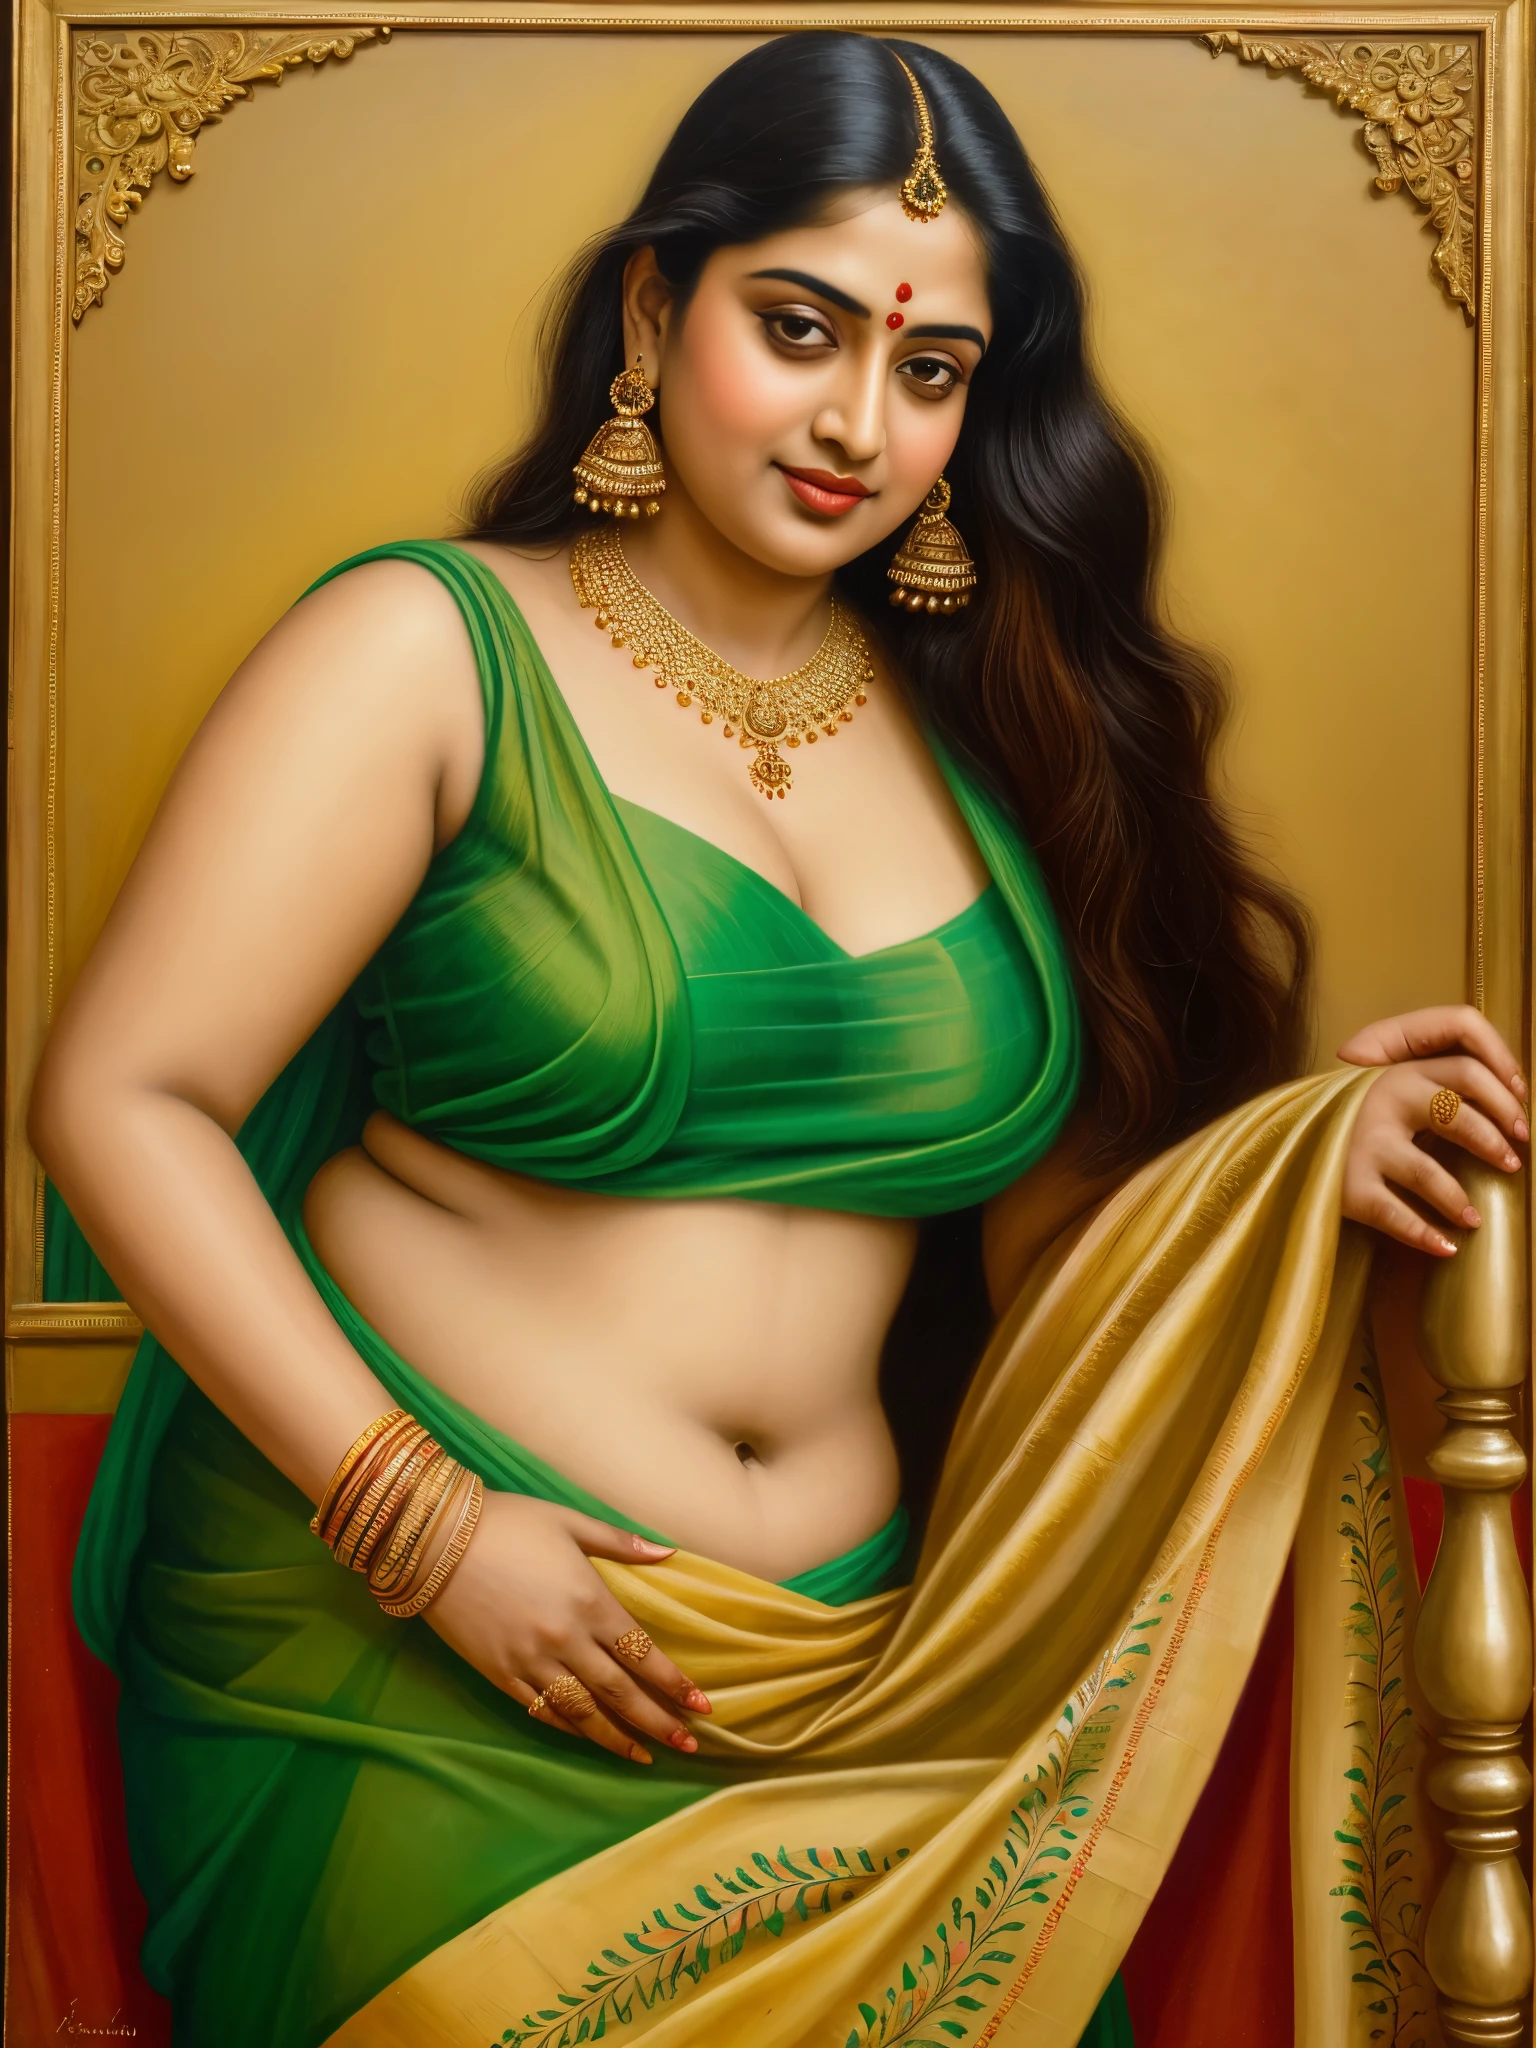 Красивая картина женщины в сари с ожерельем и серьгами., красивая толстая фигура, Толстая фигуристая красотка, Похоже на Сандипу Дхара, inspired Раджа Рави Варма, Шукальски Рави Варма, портрет прекрасной богини, Раджа Рави Варма, индийская богиня, традиционная красота, a stunning портрет богини, вдохновленный Т. к. Падмини, индийское искусство, индийская богиня of wealth, портрет богини